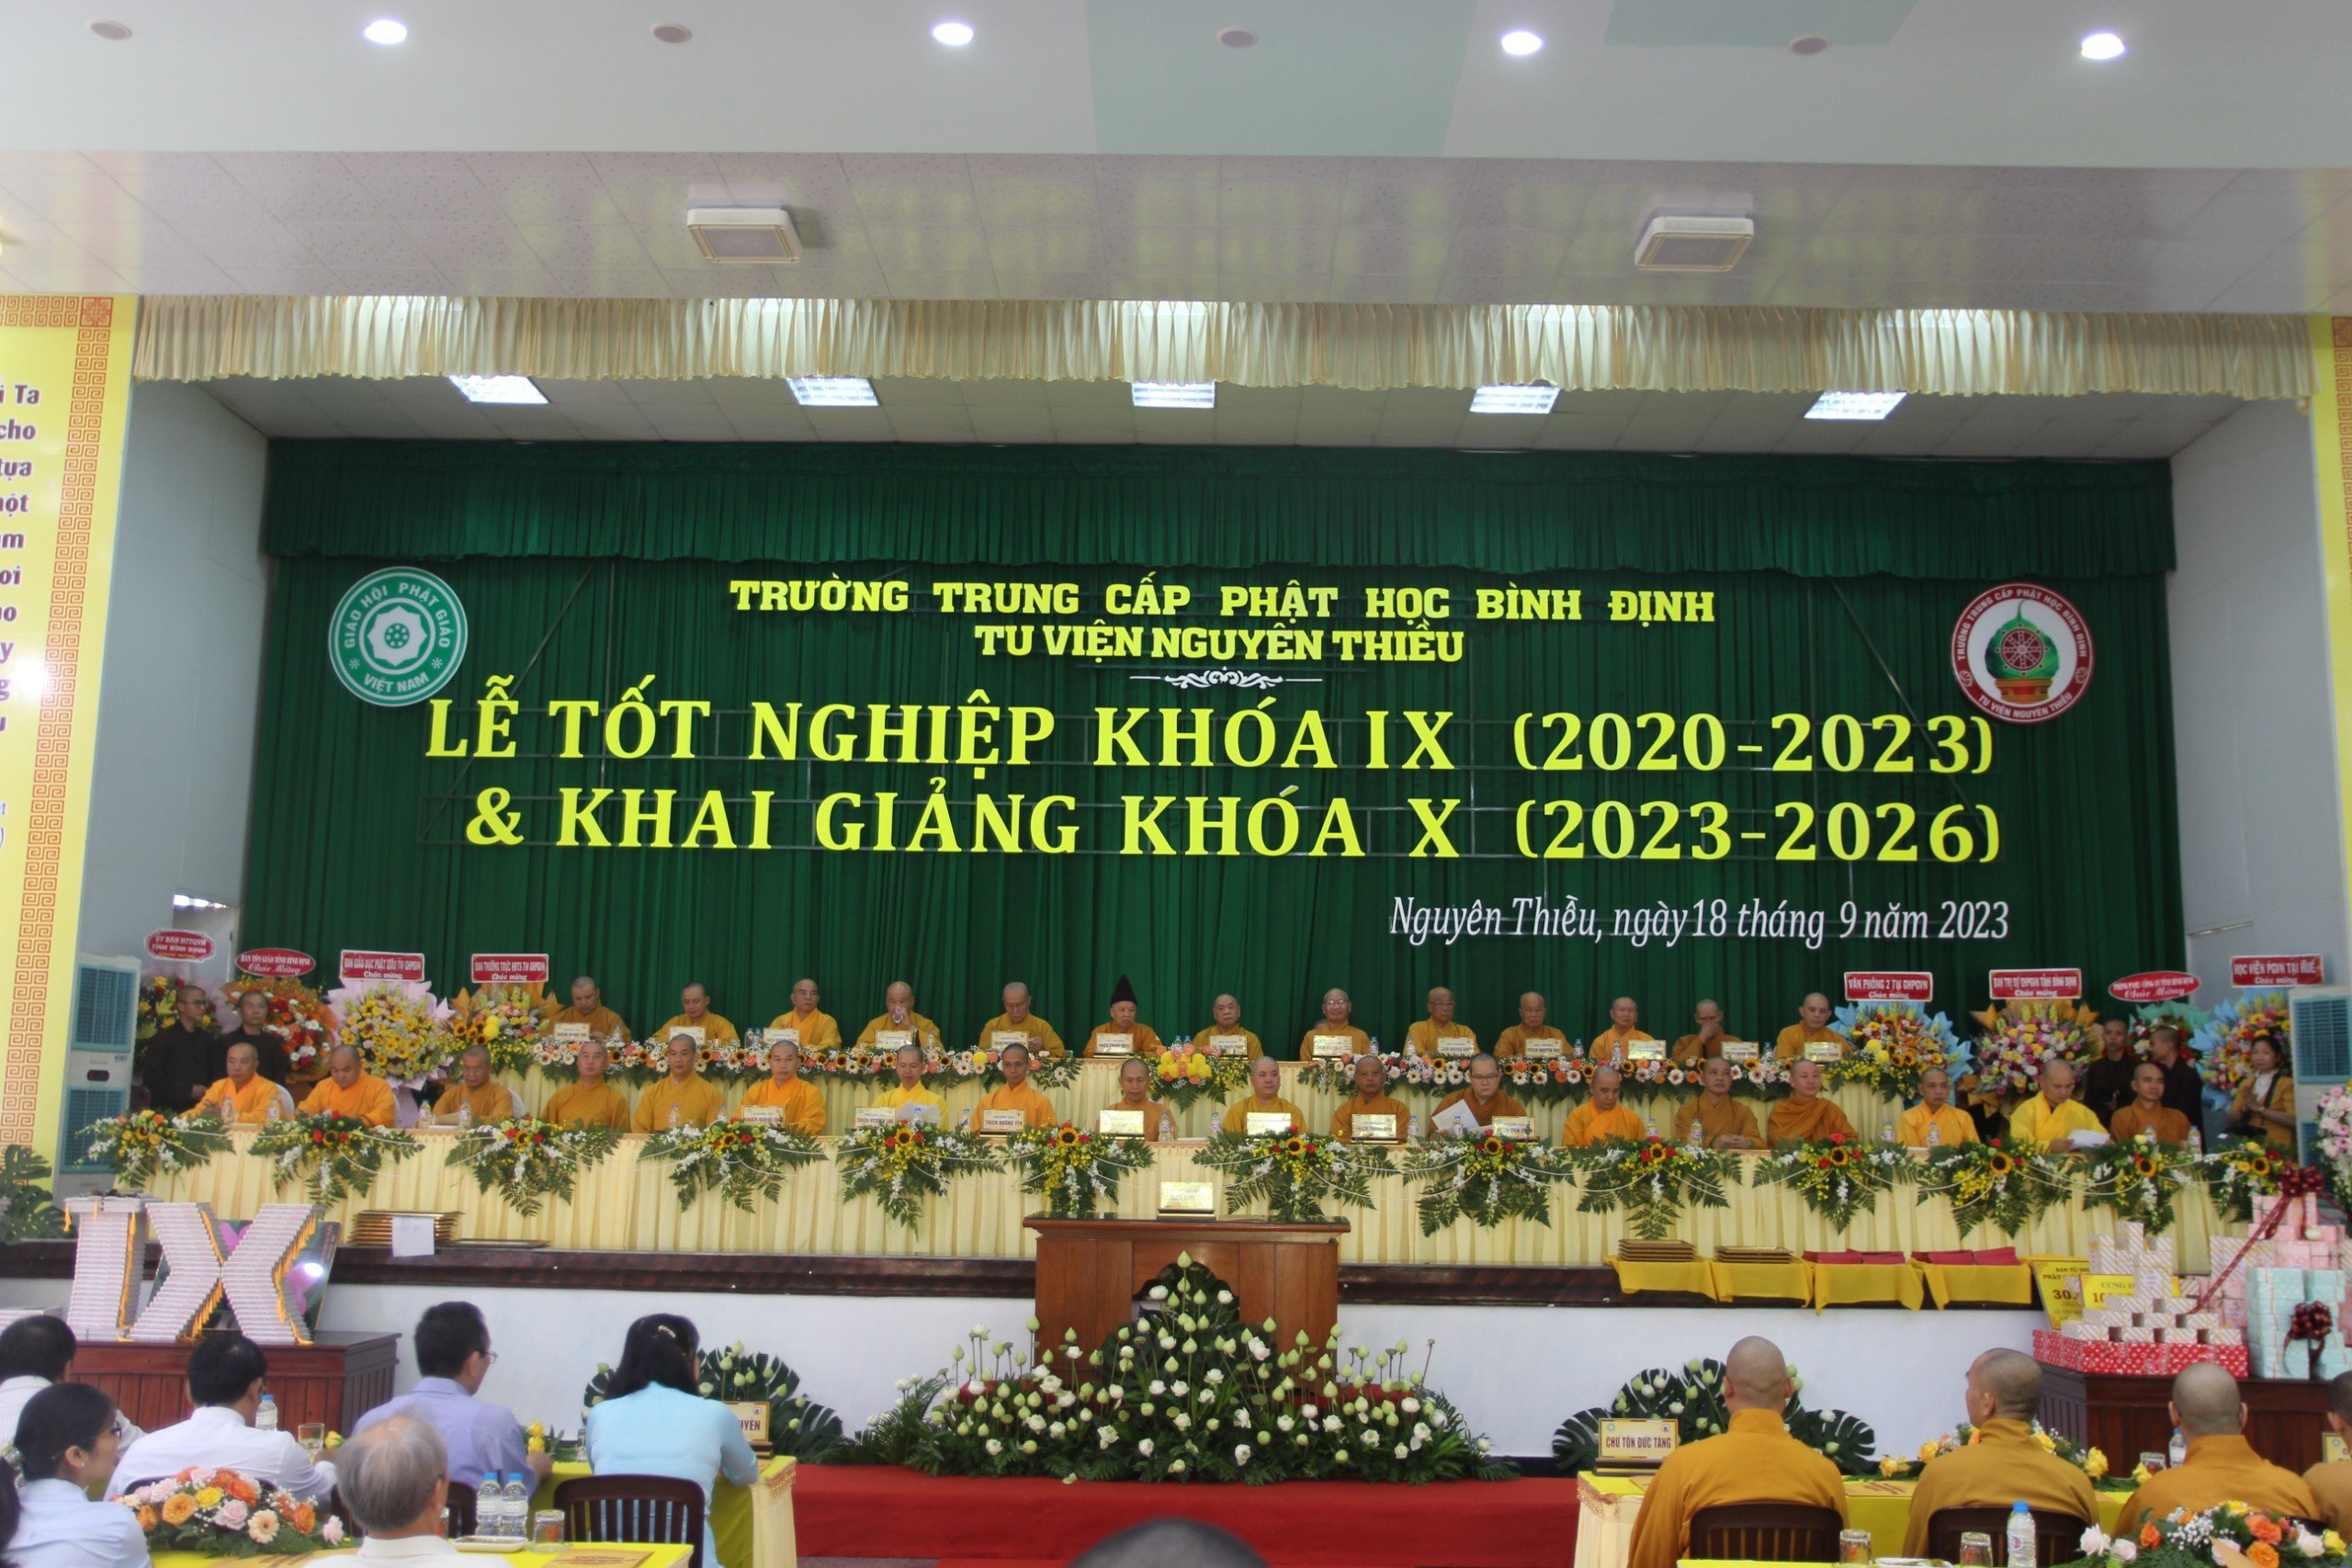 Trường Trung cấp Phật học Bình Định tổ chức Lễ Tốt nghiệp khóa IX và Khai giảng khóa X